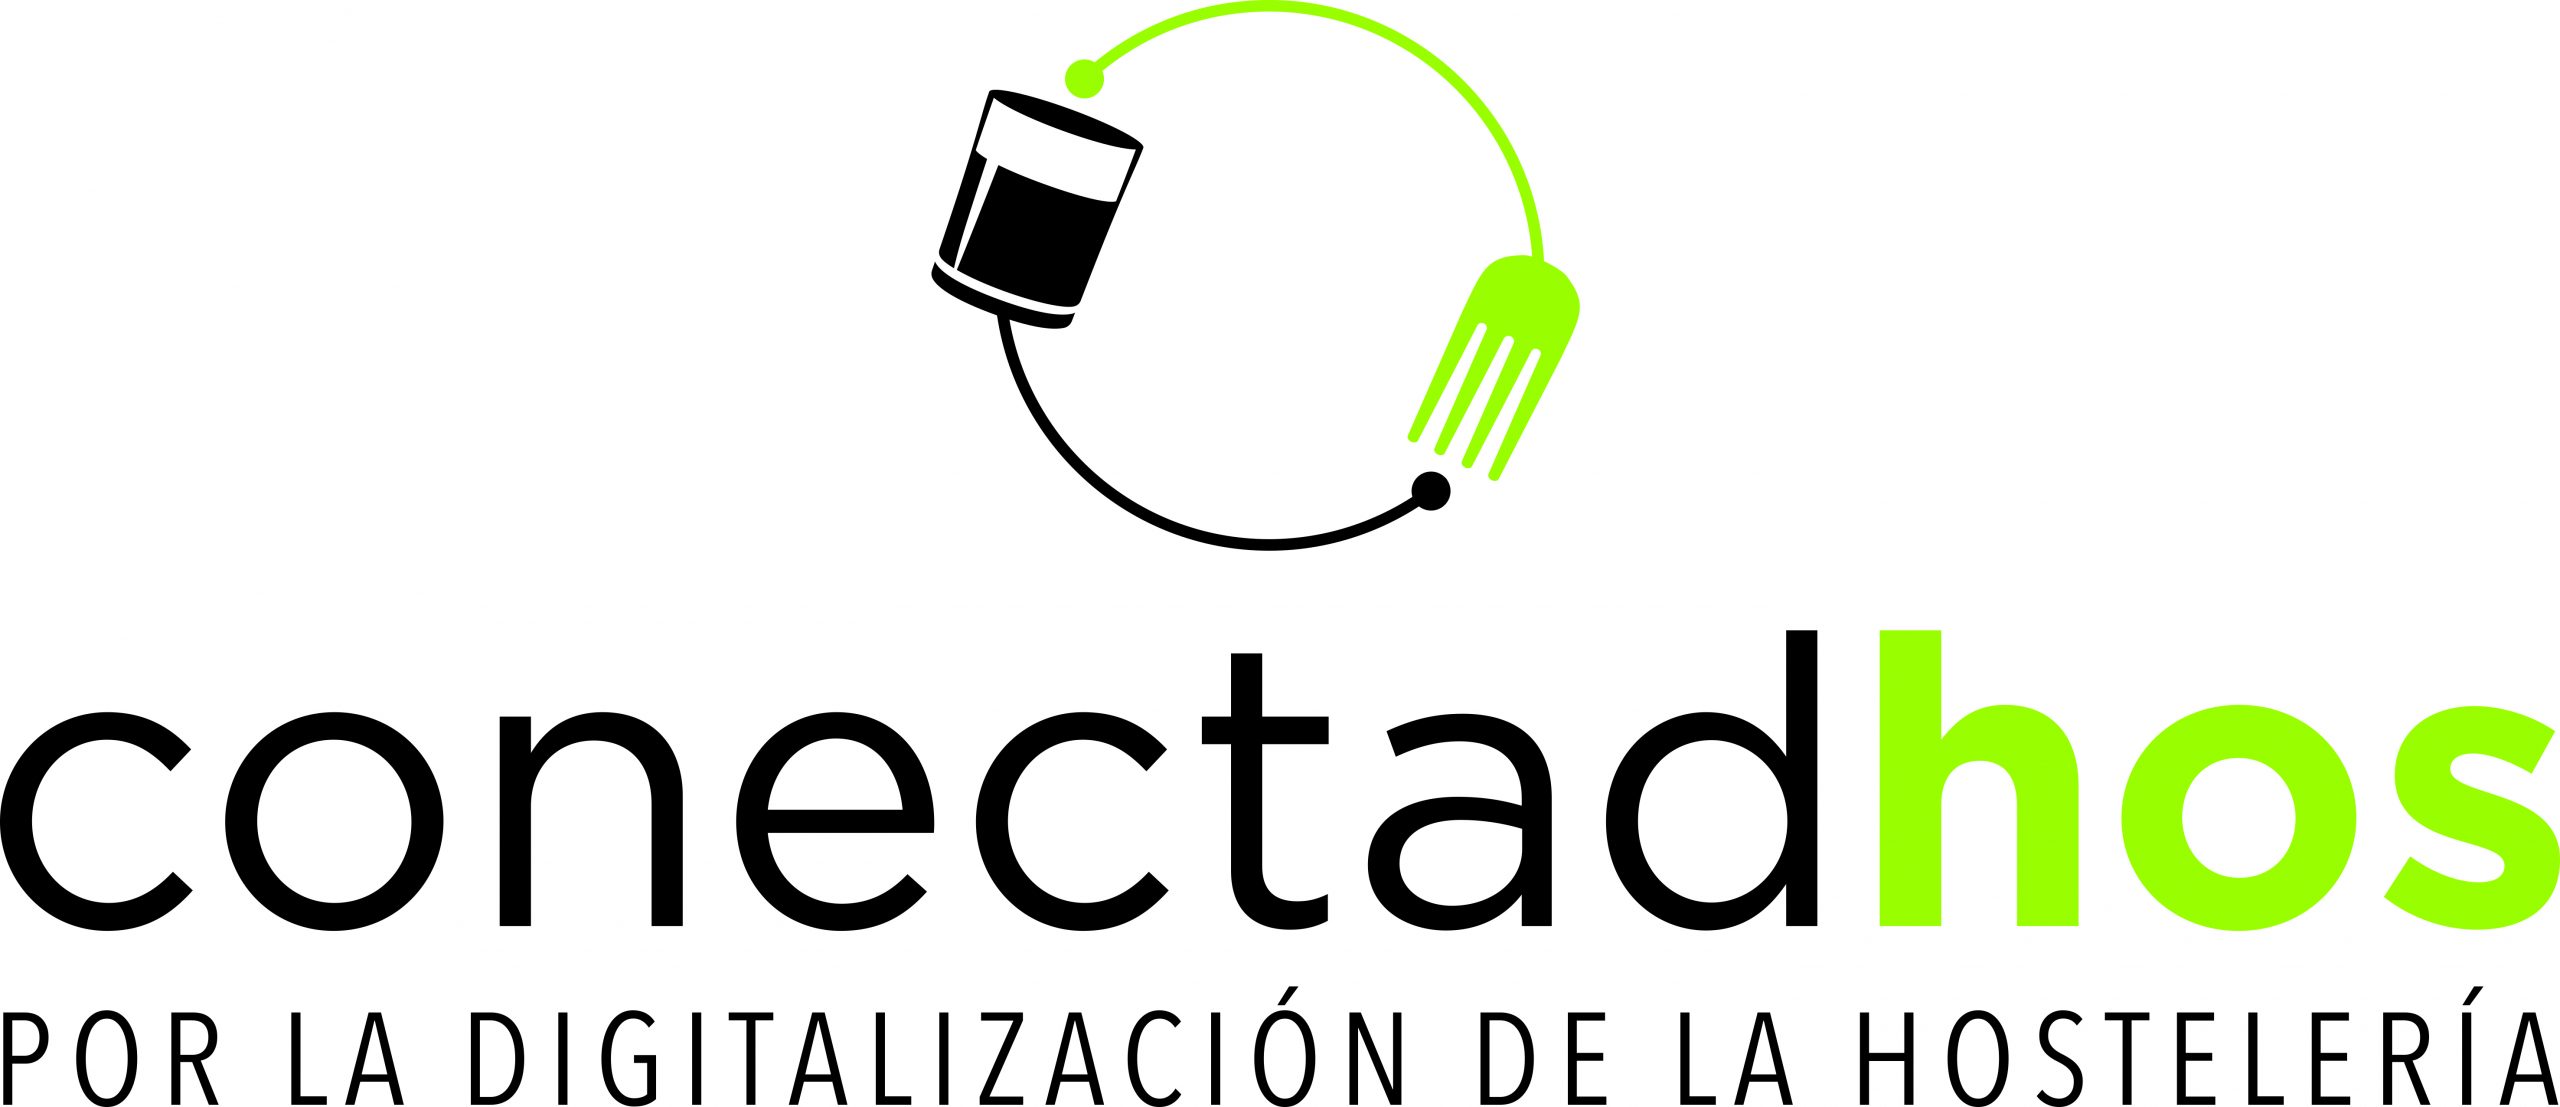 ConectadHOS presenta al gobierno su estudio sobre la digitalización en la hostelería - La Viña